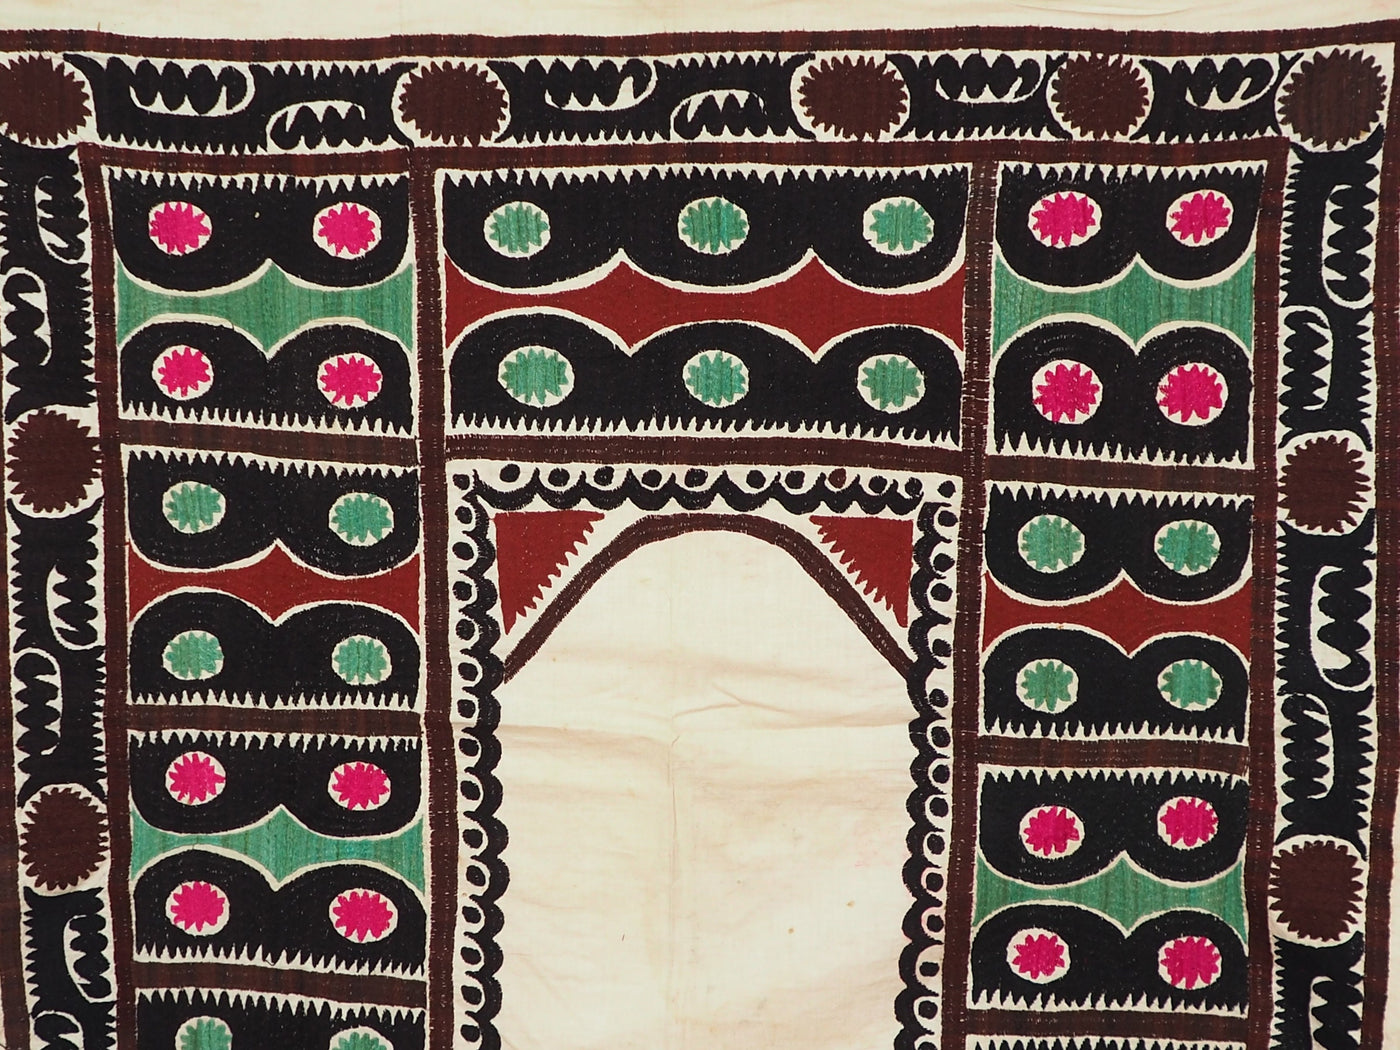 120x115 cm hand bestickte Suzani Stickerei uzbekische seiden suzani Wanddekoration decke Susani Gebetsdecke aus Afghanistan uzbekistan SZ-07 Textilien Orientsbazar   